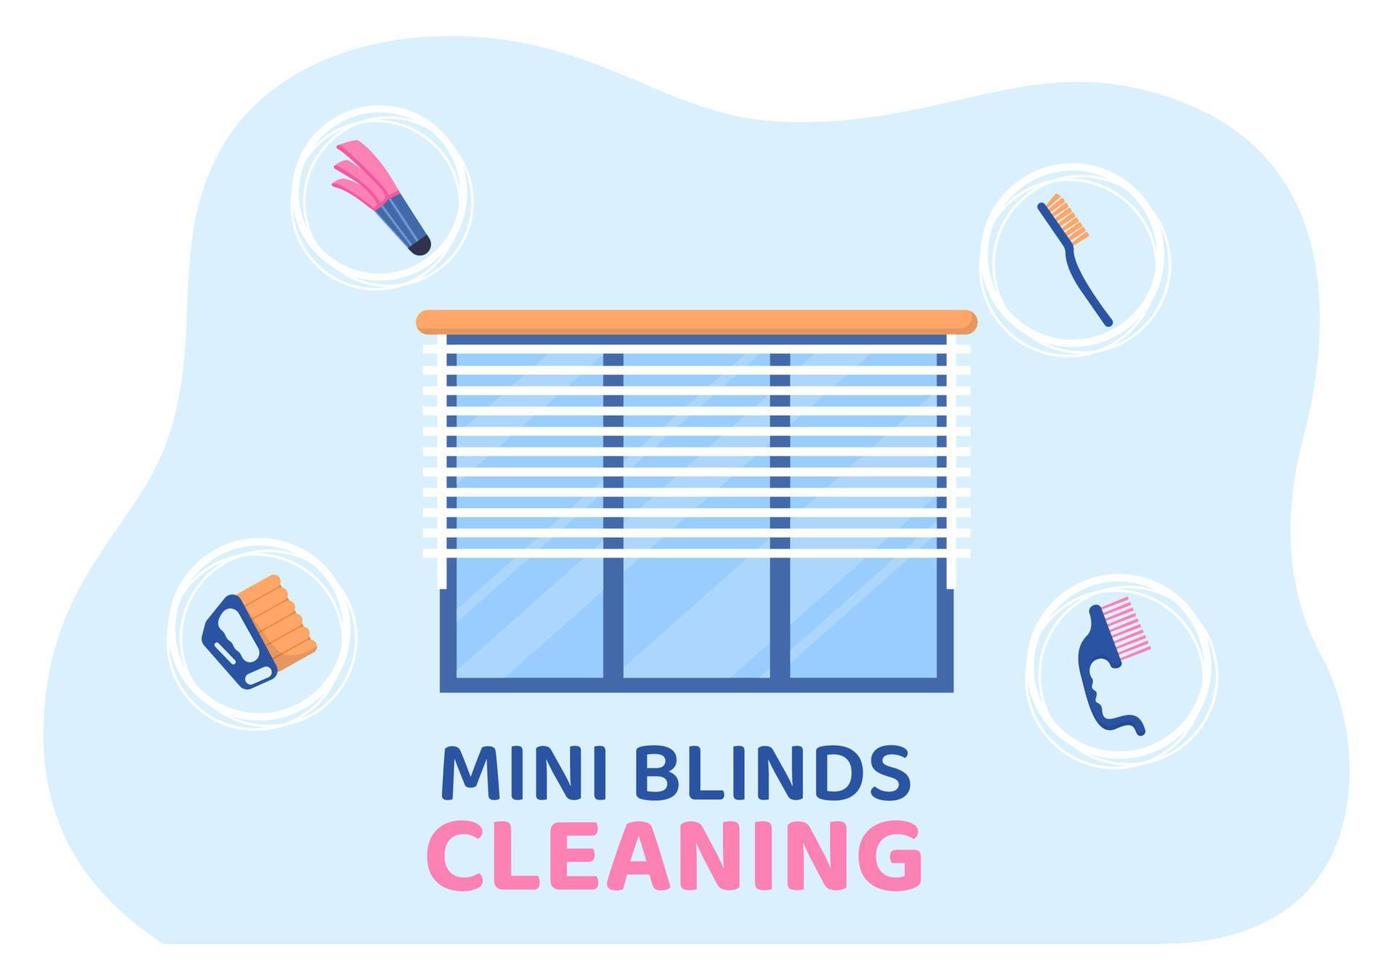 tratamiento de ventanas y cortinas de servicio de mini persianas usando varias herramientas de limpieza o interiores de casas en ilustración de caricaturas planas vector